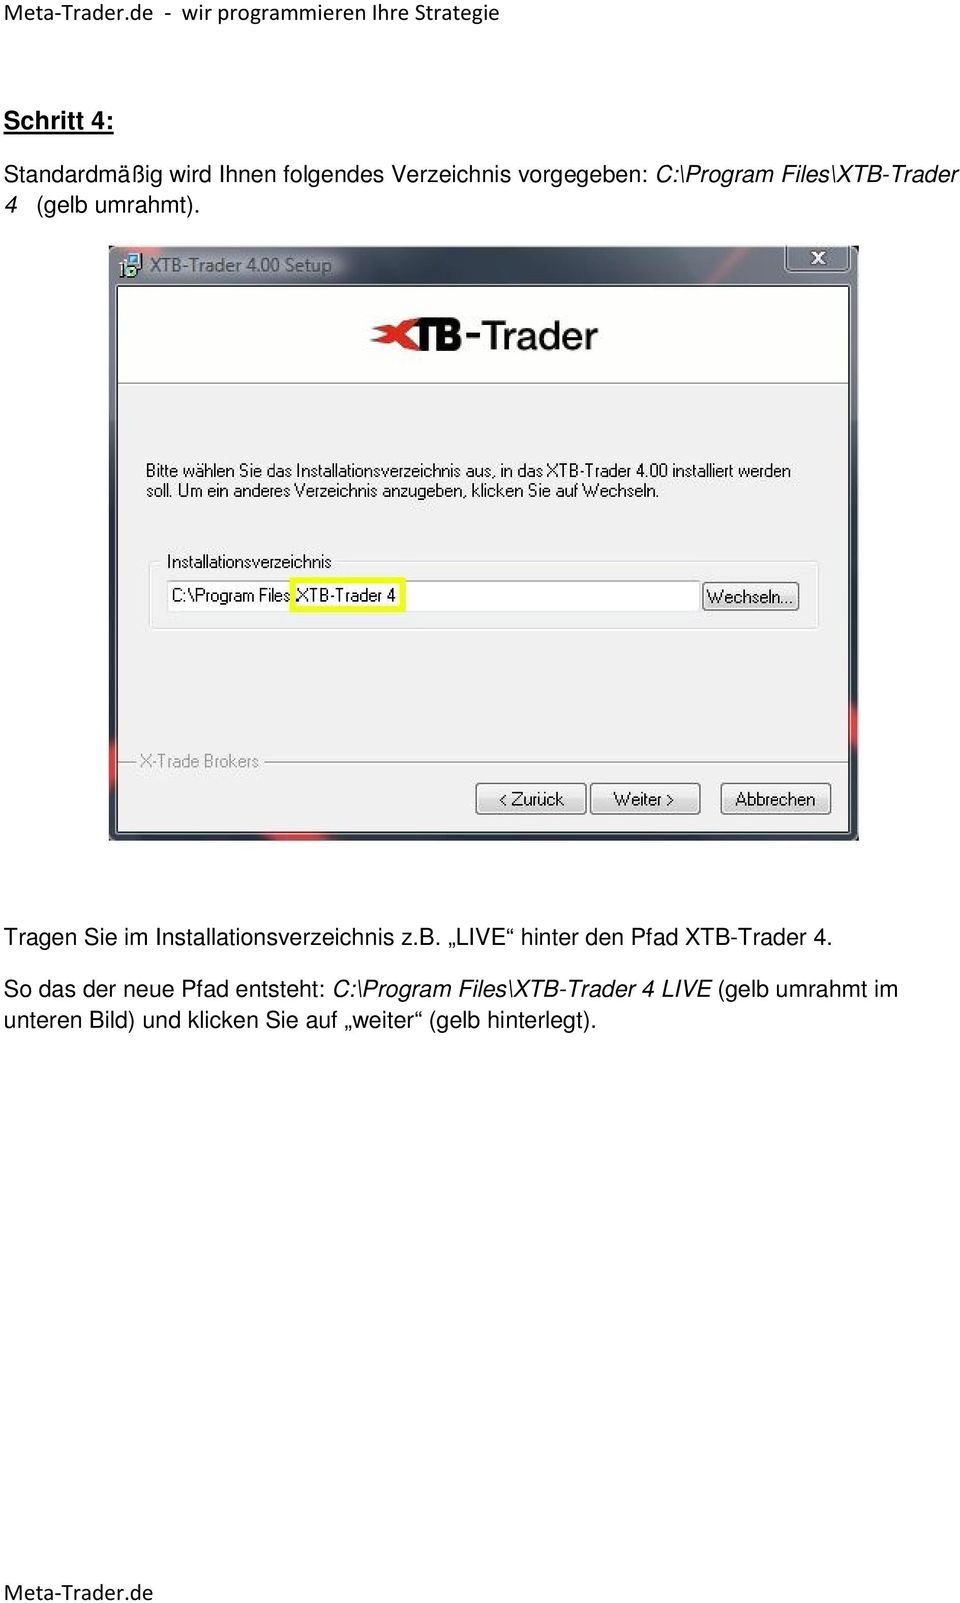 Tragen Sie im Installationsverzeichnis z.b. LIVE hinter den Pfad XTB-Trader 4.